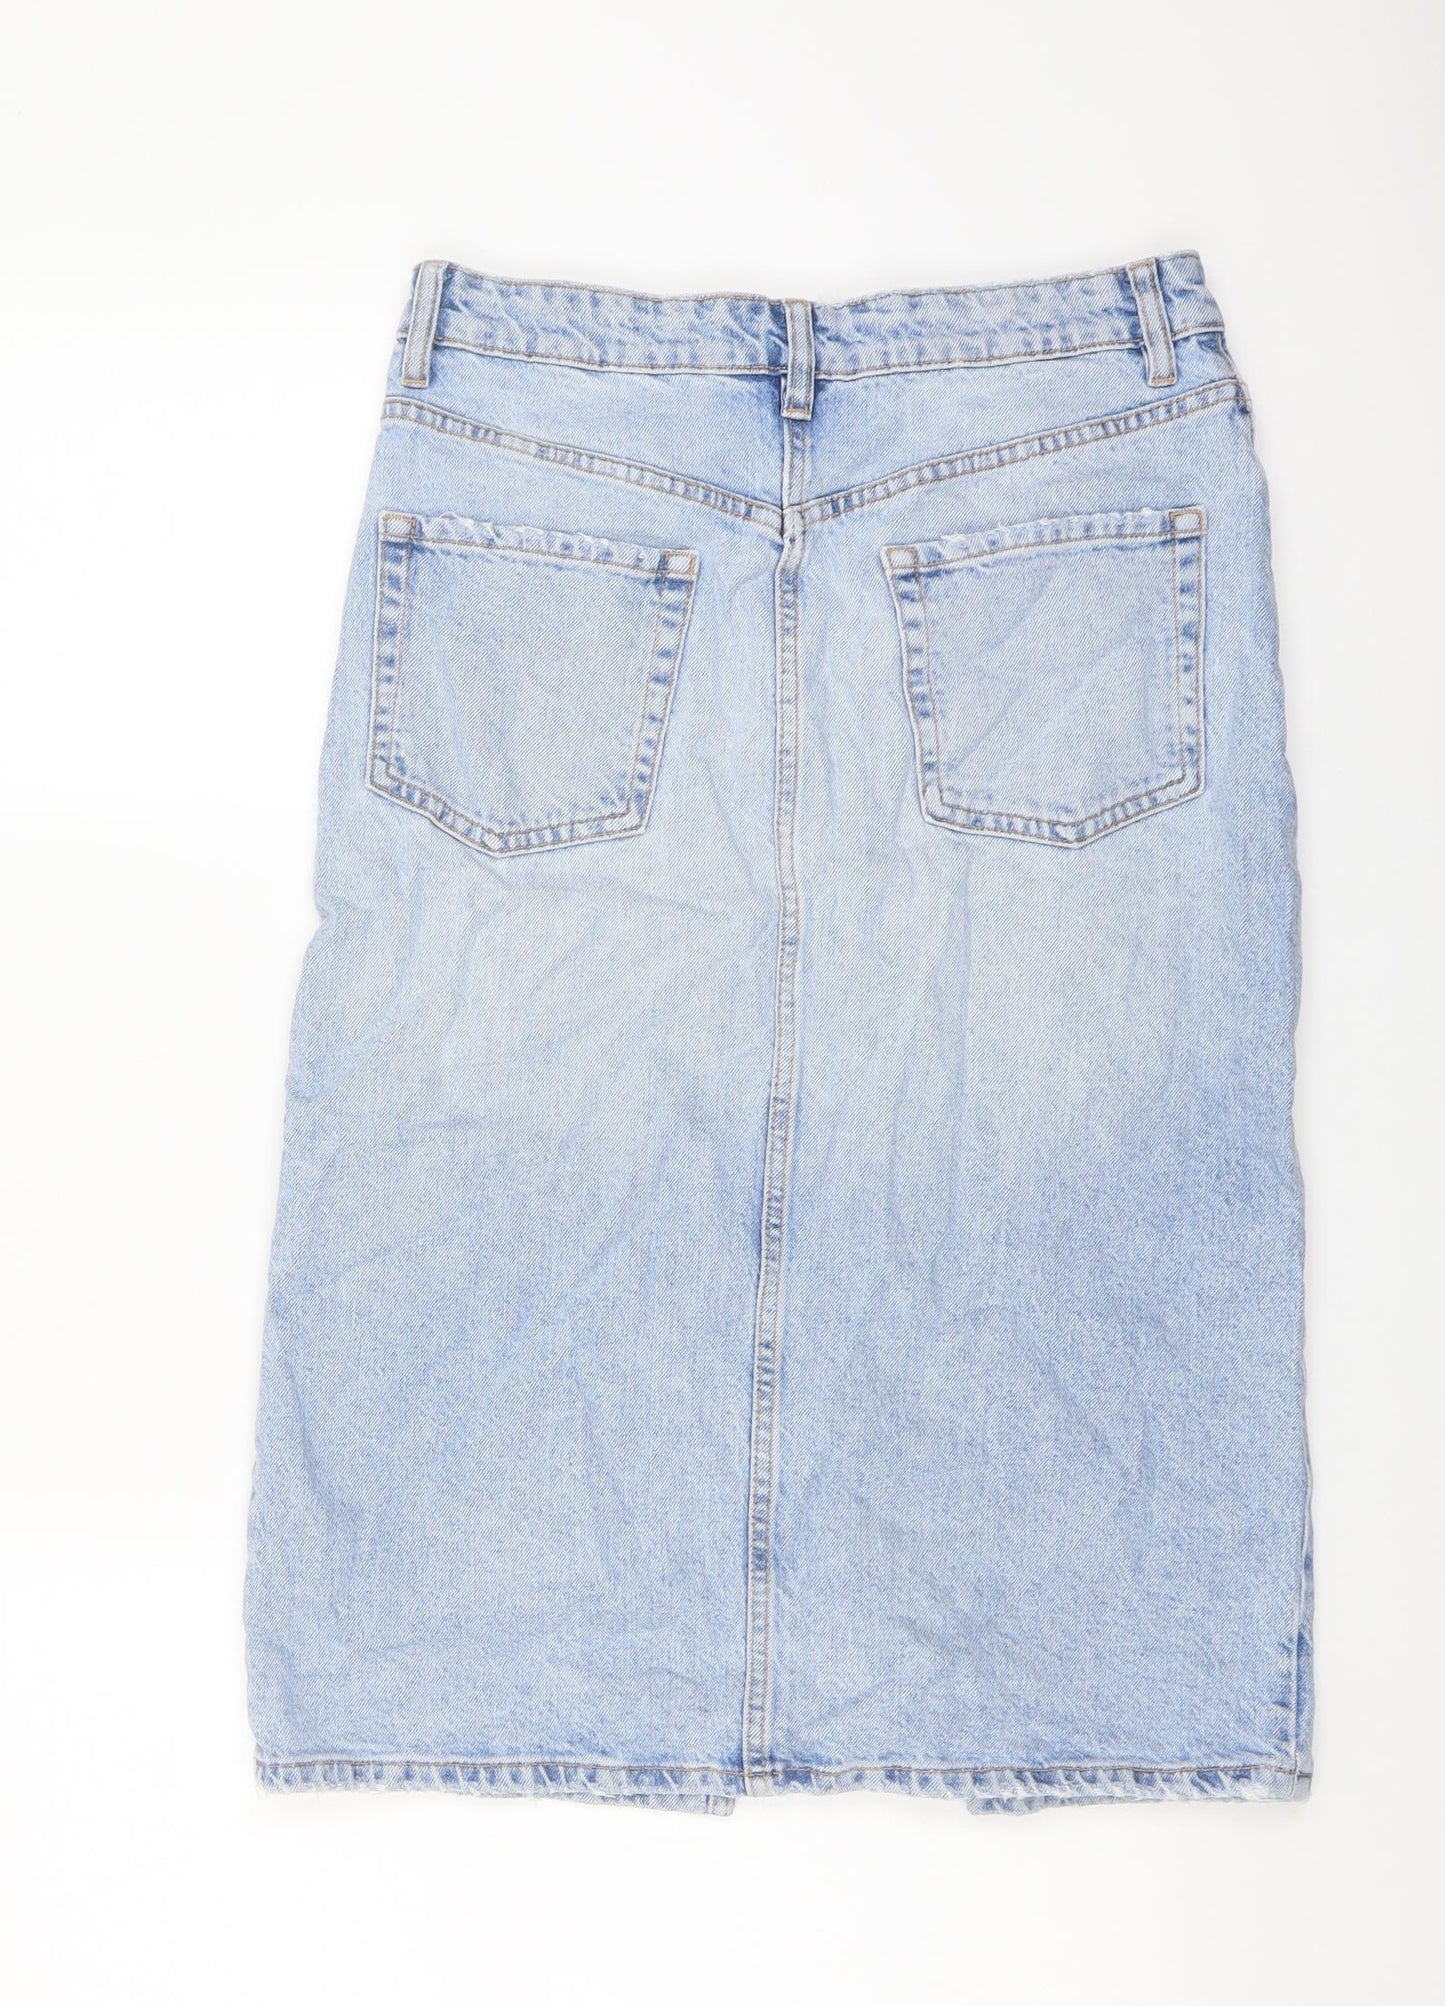 Zara Womens Blue Cotton A-Line Skirt Size M Button